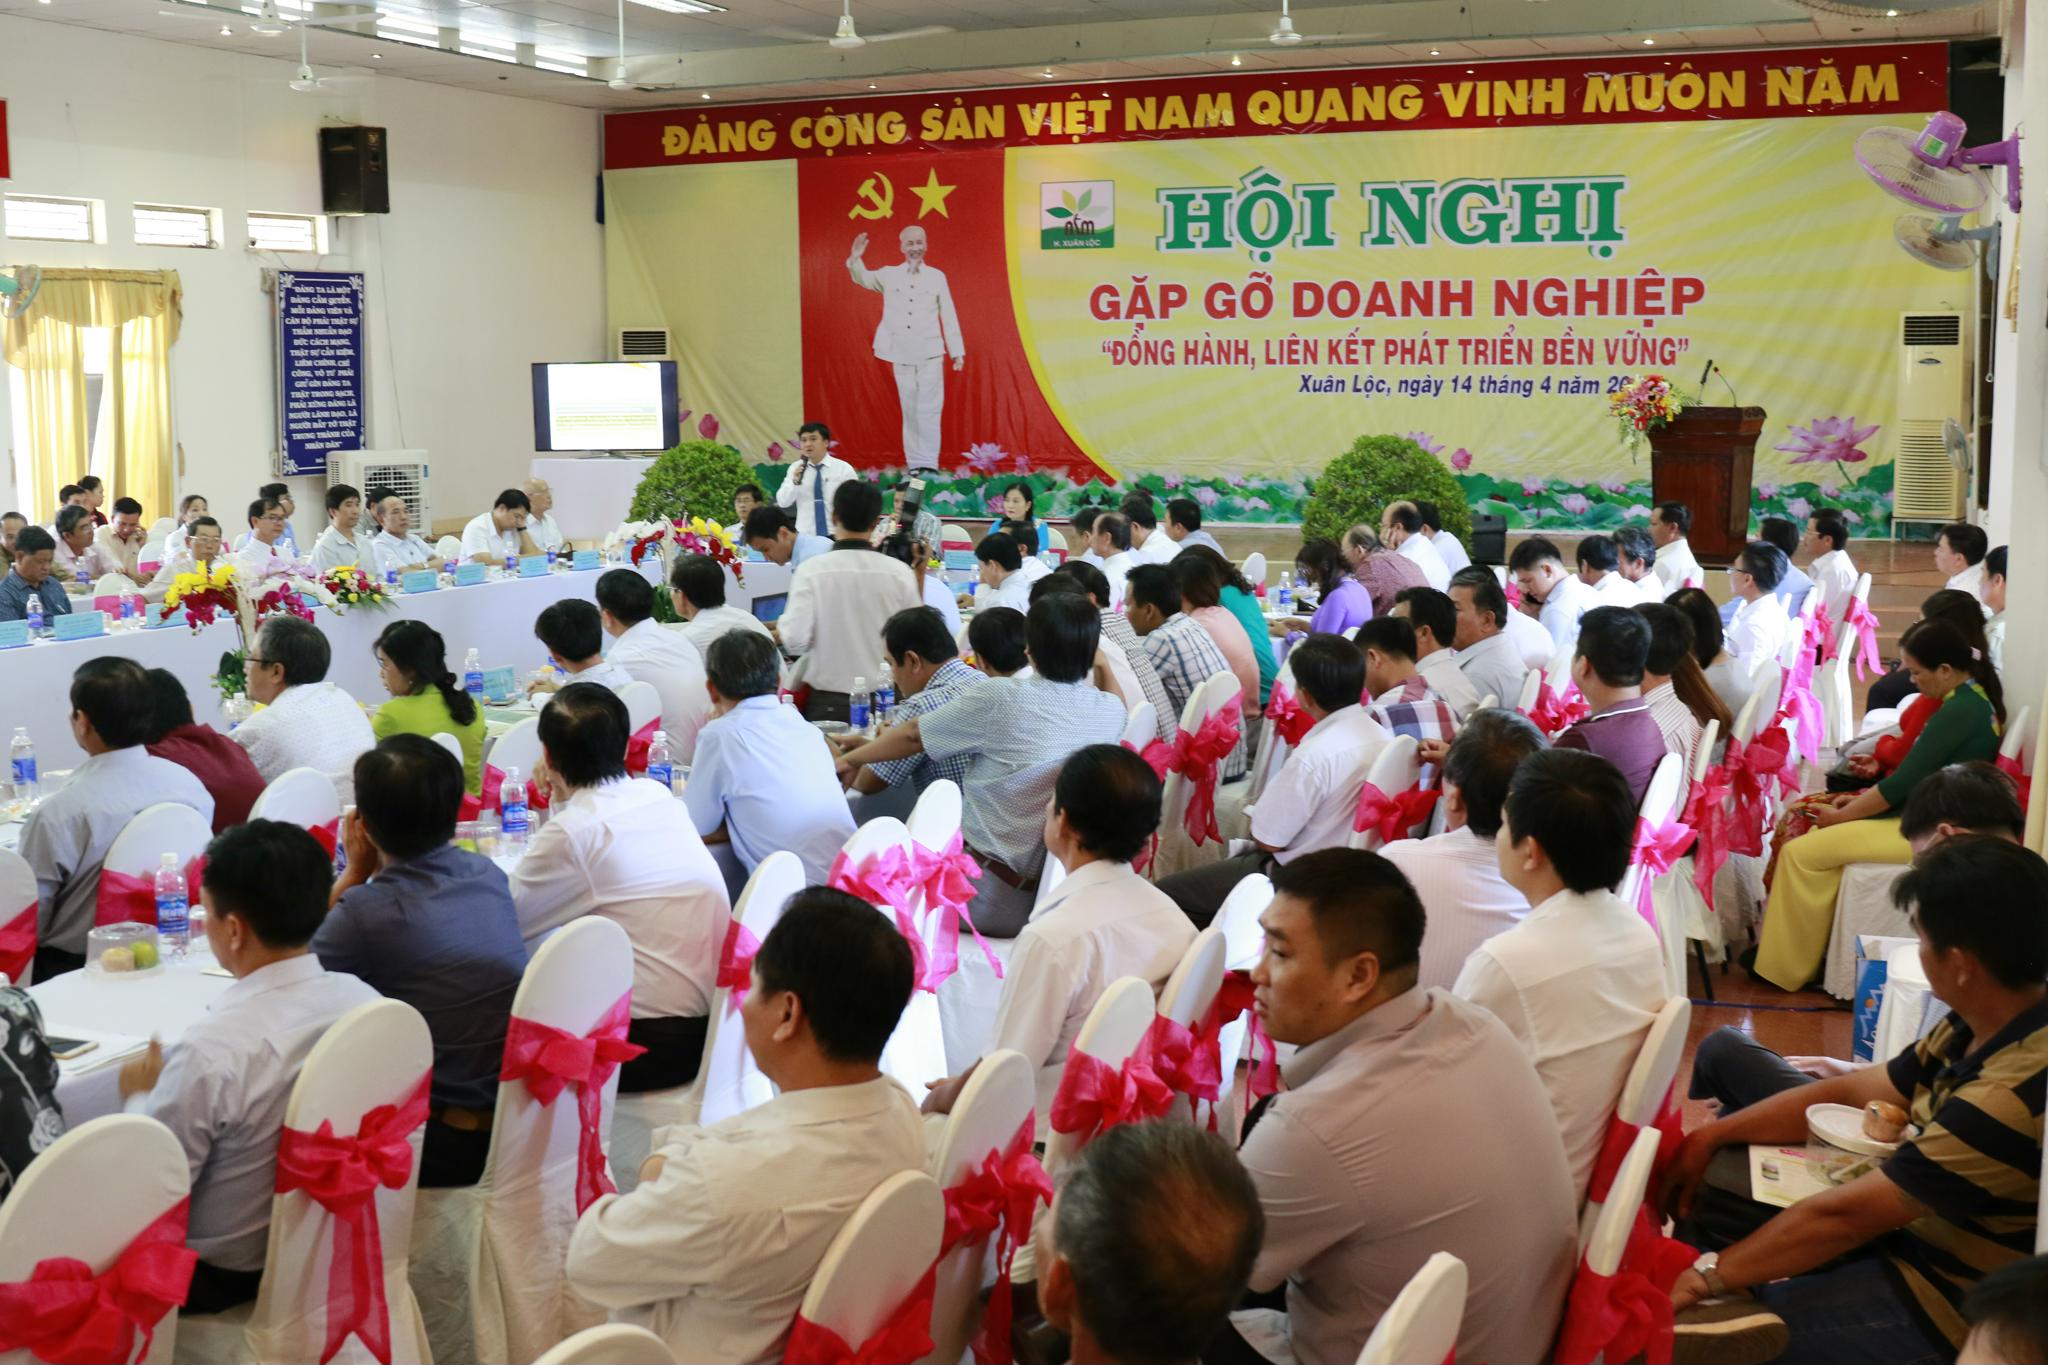 C.P. Việt Nam tham dự hội nghị Gặp gỡ doanh nghiệp tại huyện Xuân Lộc